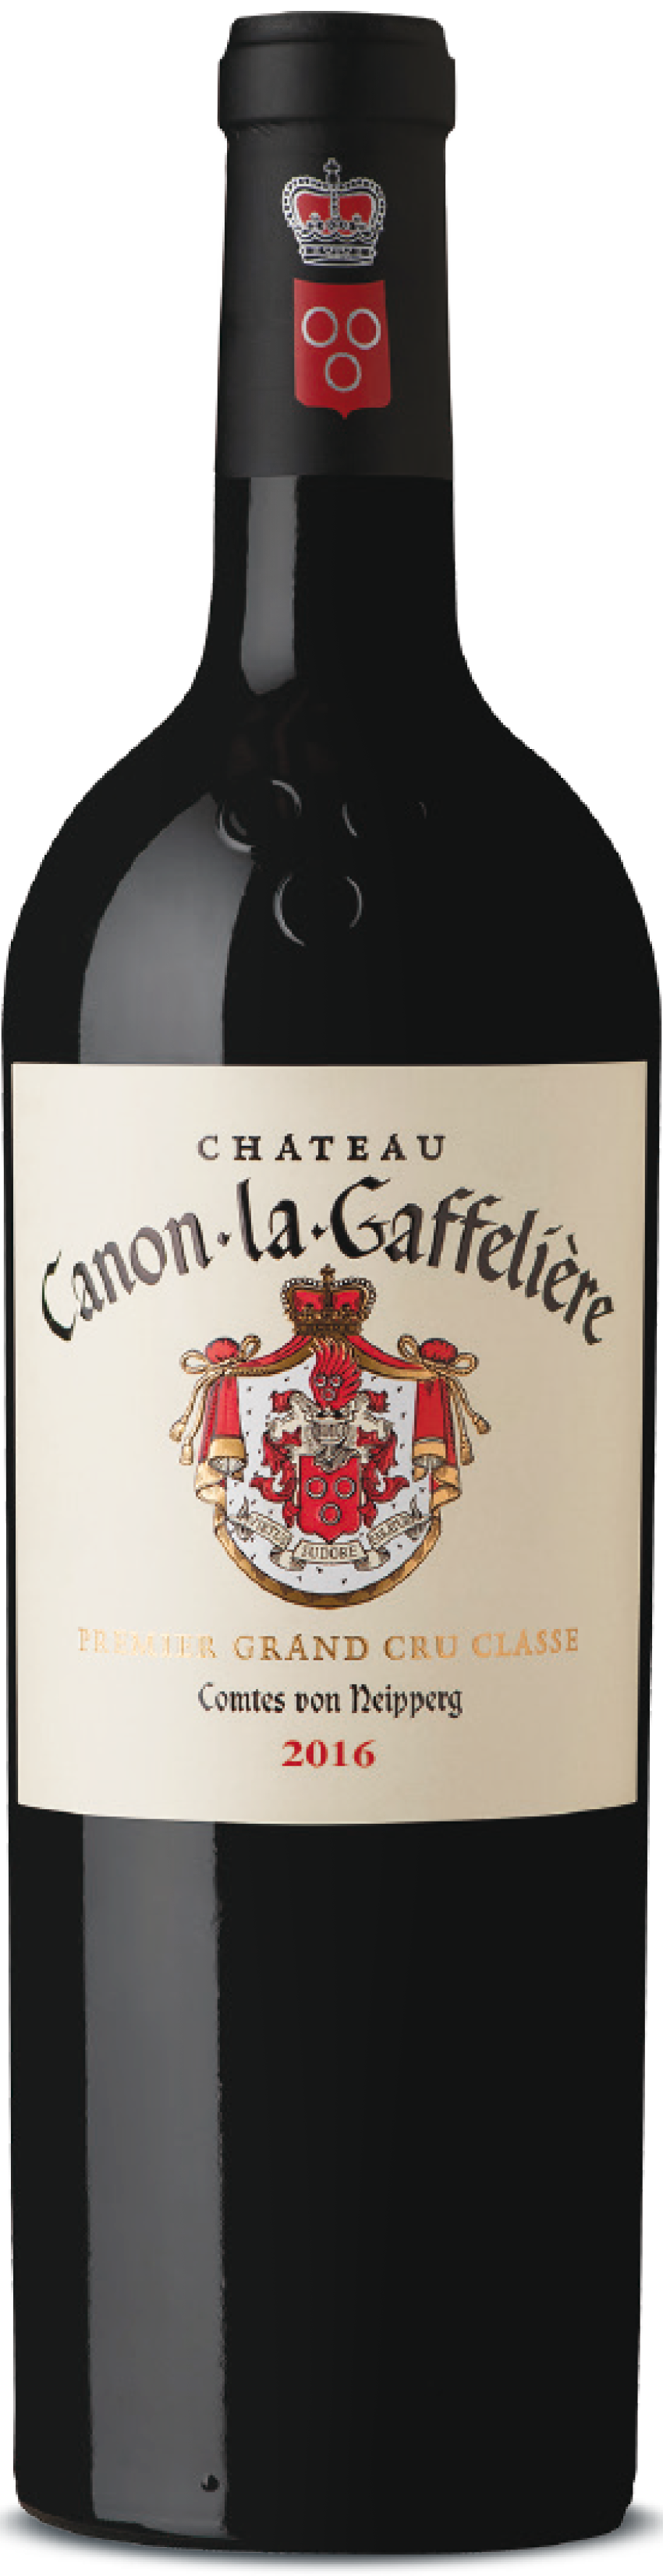 2016 Château Canon-La-Gaffelière